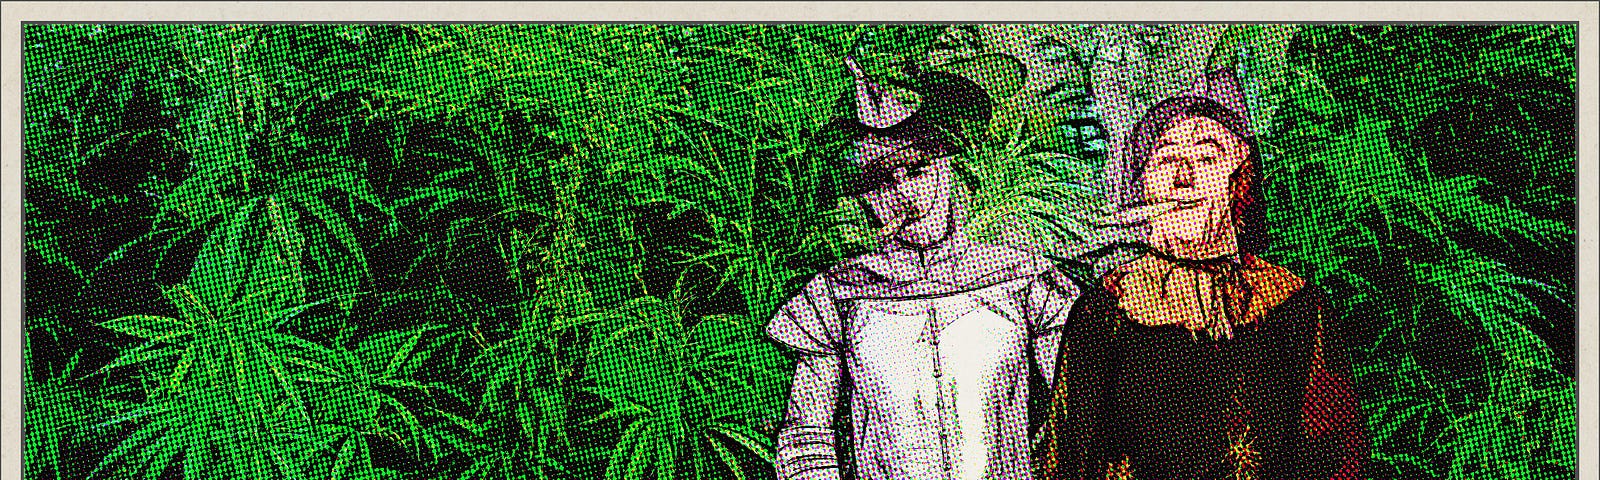 Scarecrow and Tin Man getting high in marijuana field